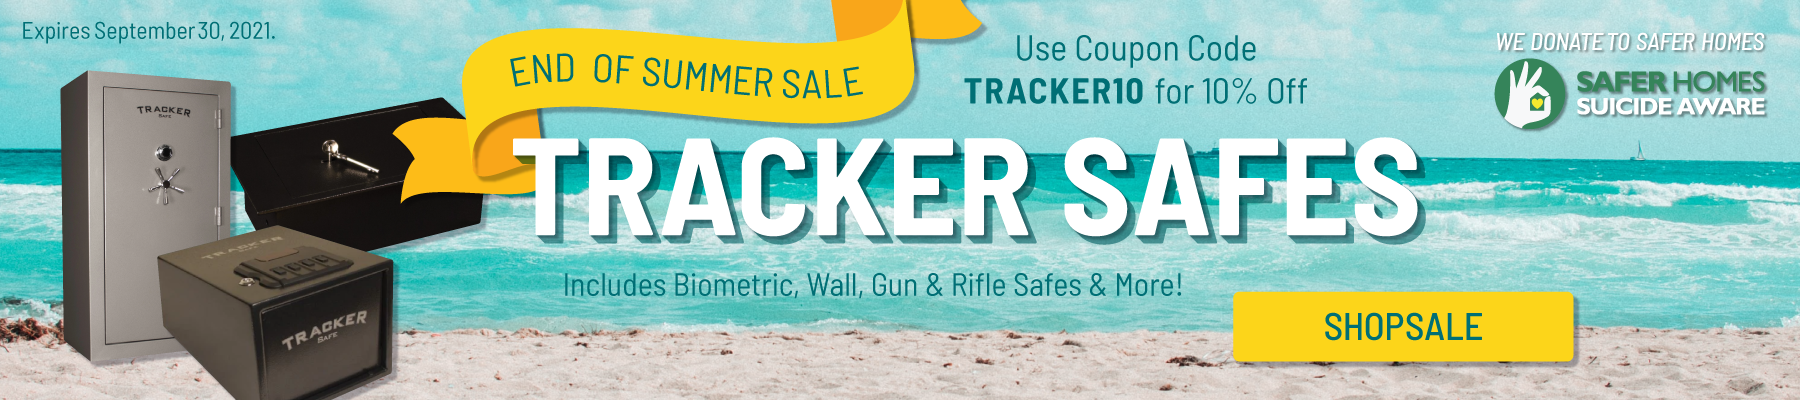 Tracker Safe - End of Summer Sale